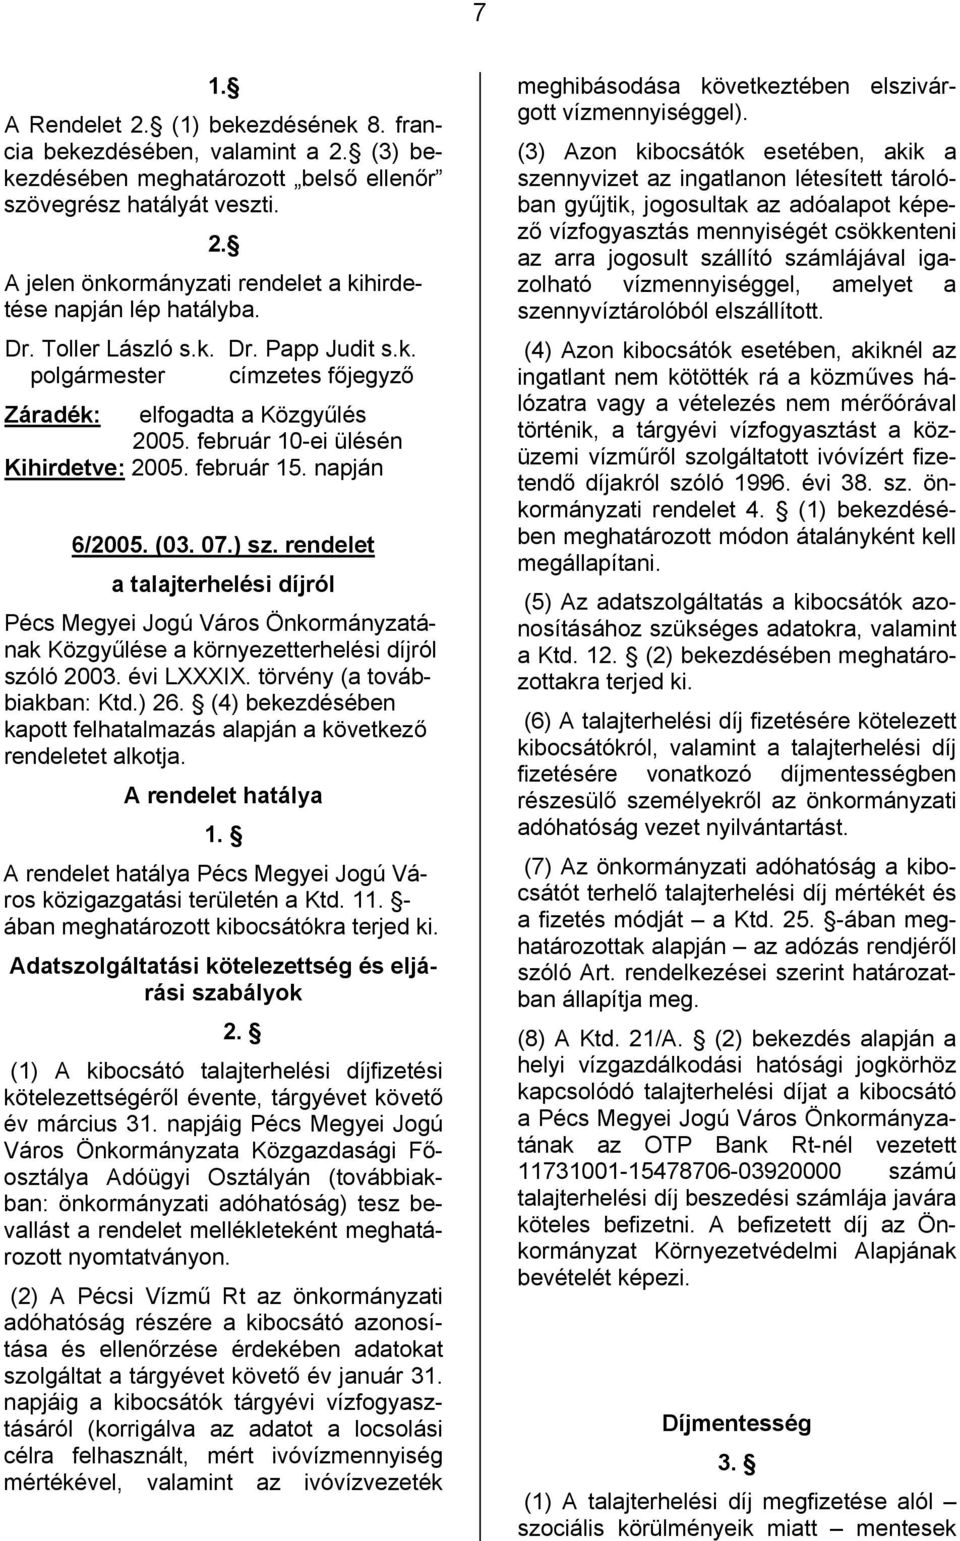 rendelet a talajterhelési díjról Pécs Megyei Jogú Város Önkormányzatának Közgyűlése a környezetterhelési díjról szóló 2003. évi LXXXIX. törvény (a továbbiakban: Ktd.) 26.